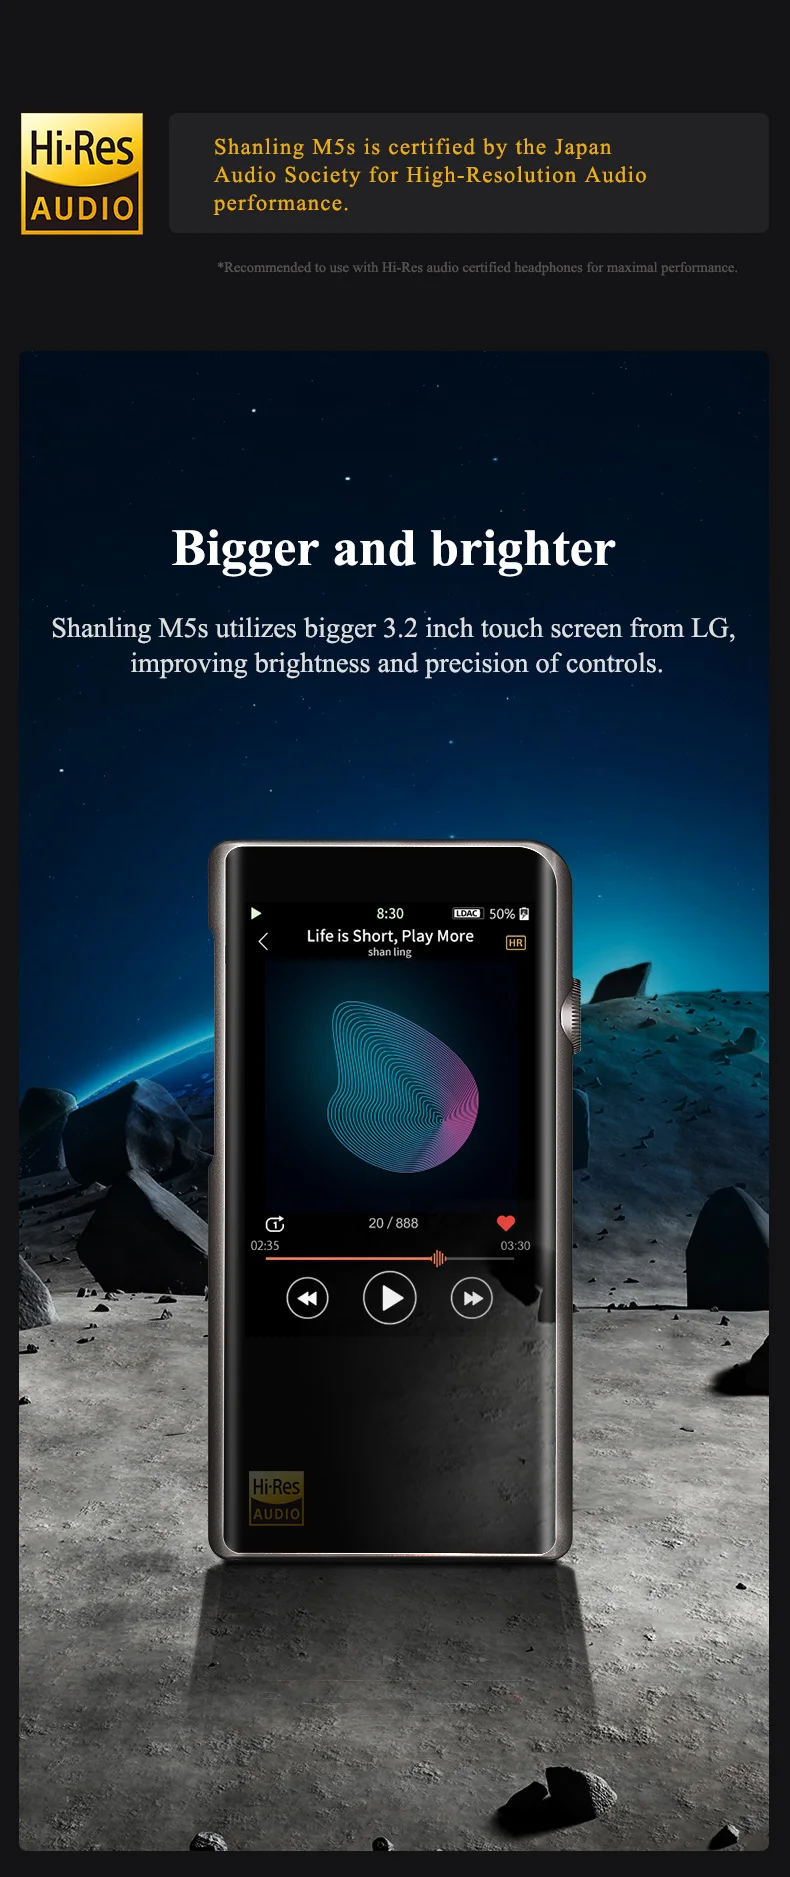 Shanling M5s Bluetooth Портативный Hi-Res музыкальный плеер MP3 2* AK4493EQ 2,5 мм сбалансированный выход Поддержка LDAC/Qualcomm aptX/AAC WiFi